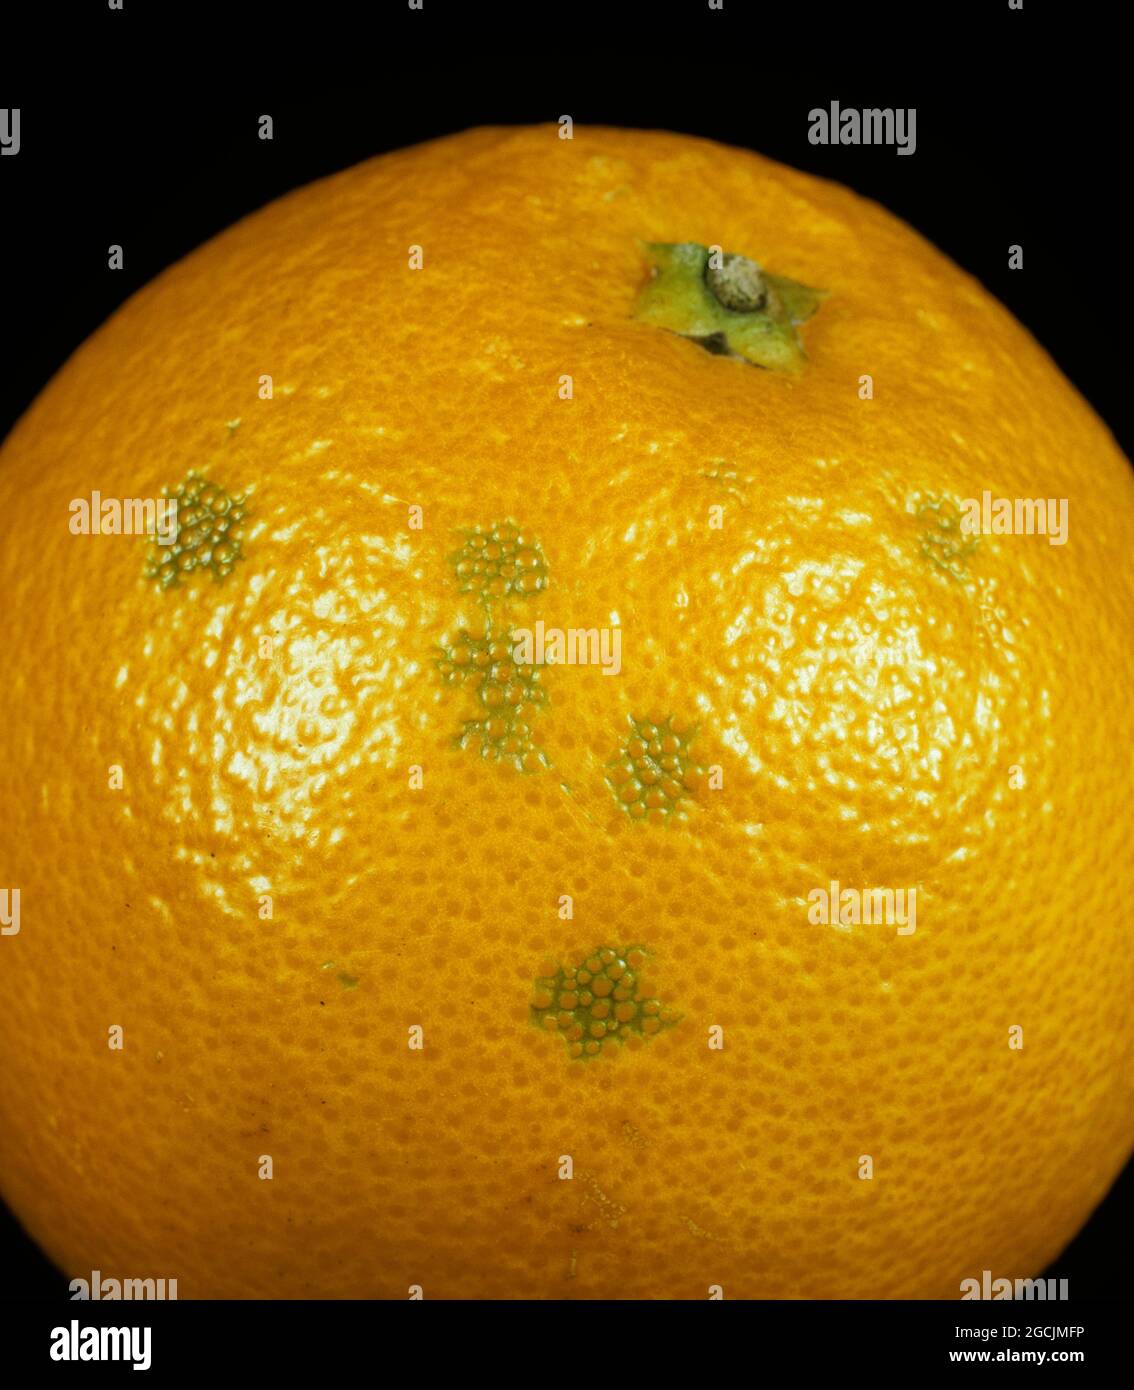 Olleocellosi, un disturbo fsiologico della cotenna che causa difetti nella buccia d'arancia dopo la rottura delle ghiandole dell'olio di buccia causando una reazione tossica nel peri Foto Stock